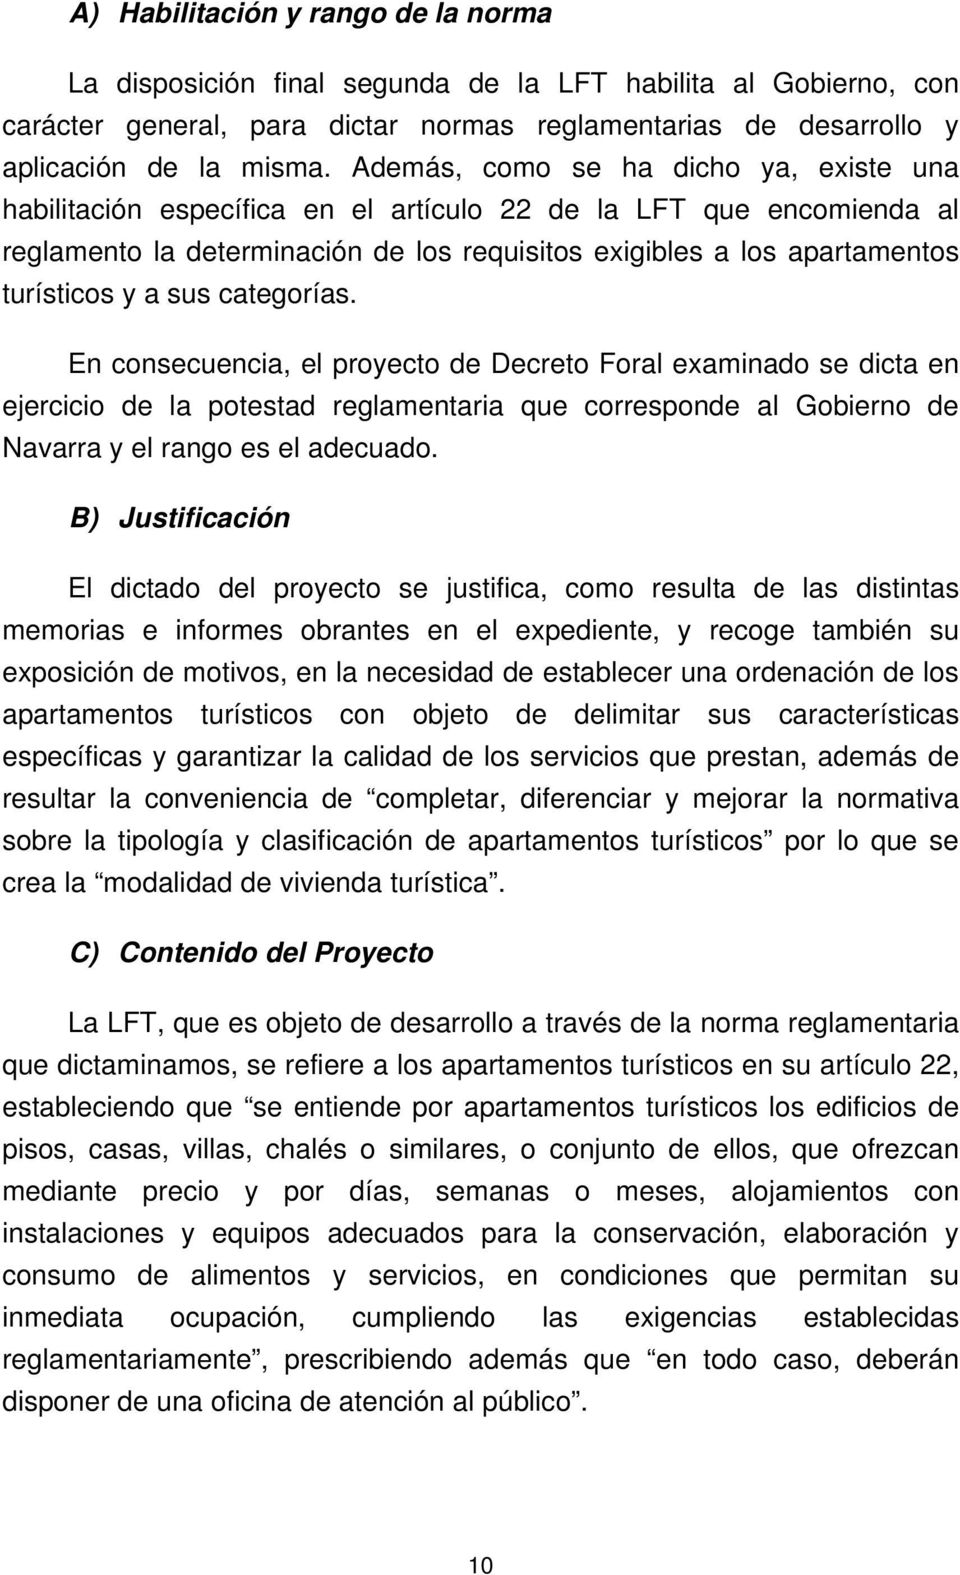 sus categorías. En consecuencia, el proyecto de Decreto Foral examinado se dicta en ejercicio de la potestad reglamentaria que corresponde al Gobierno de Navarra y el rango es el adecuado.